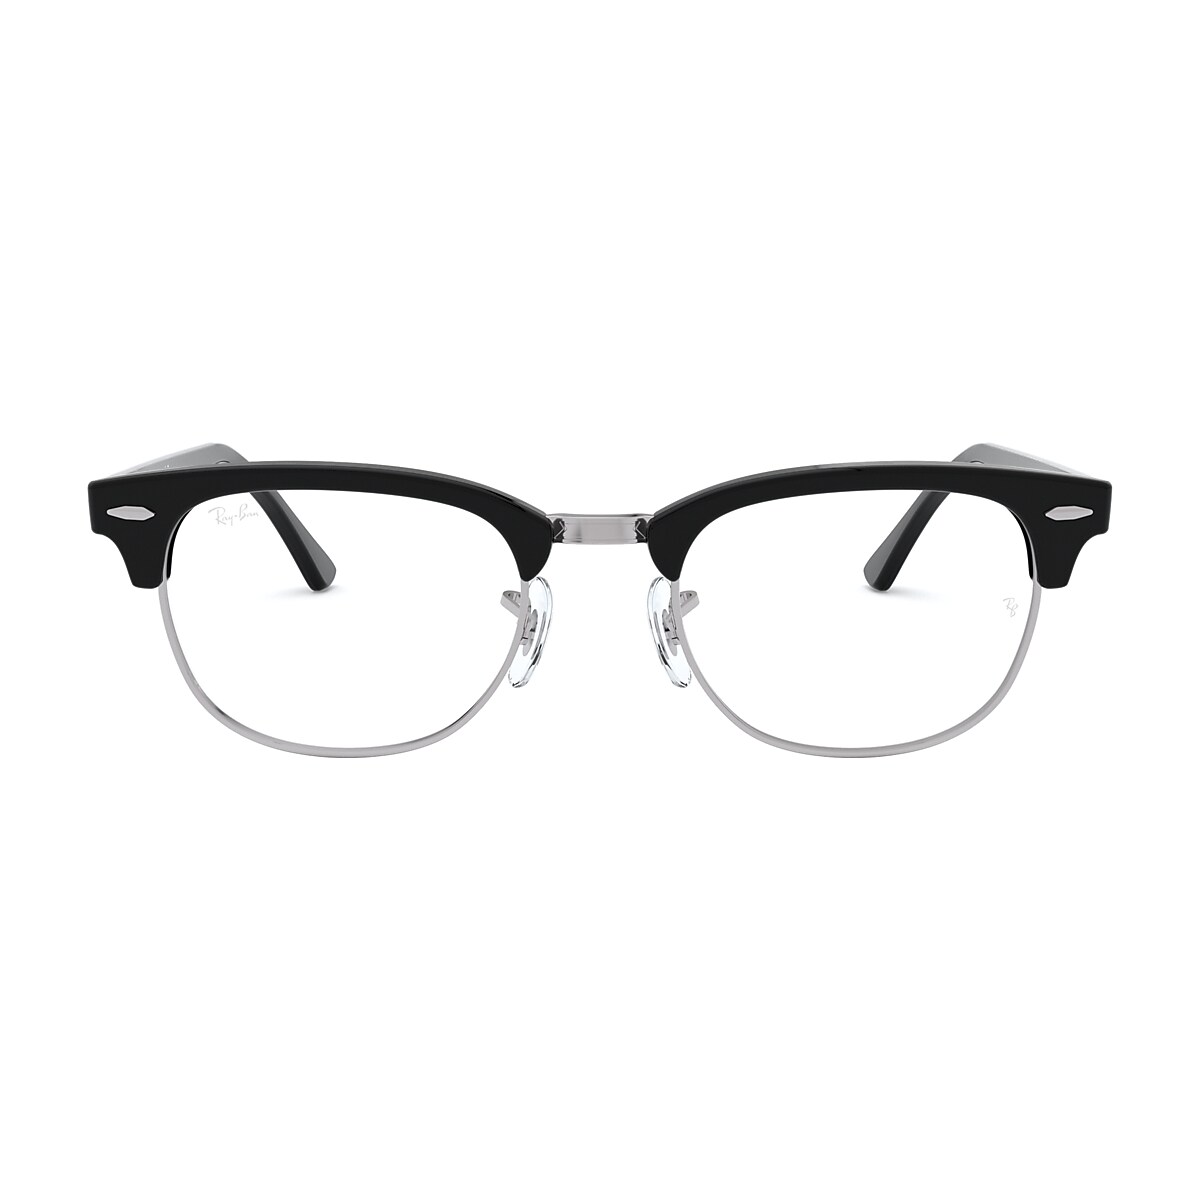 Ray Ban Clubmaster Black Eyeglasses Glasses Com Free Shipping